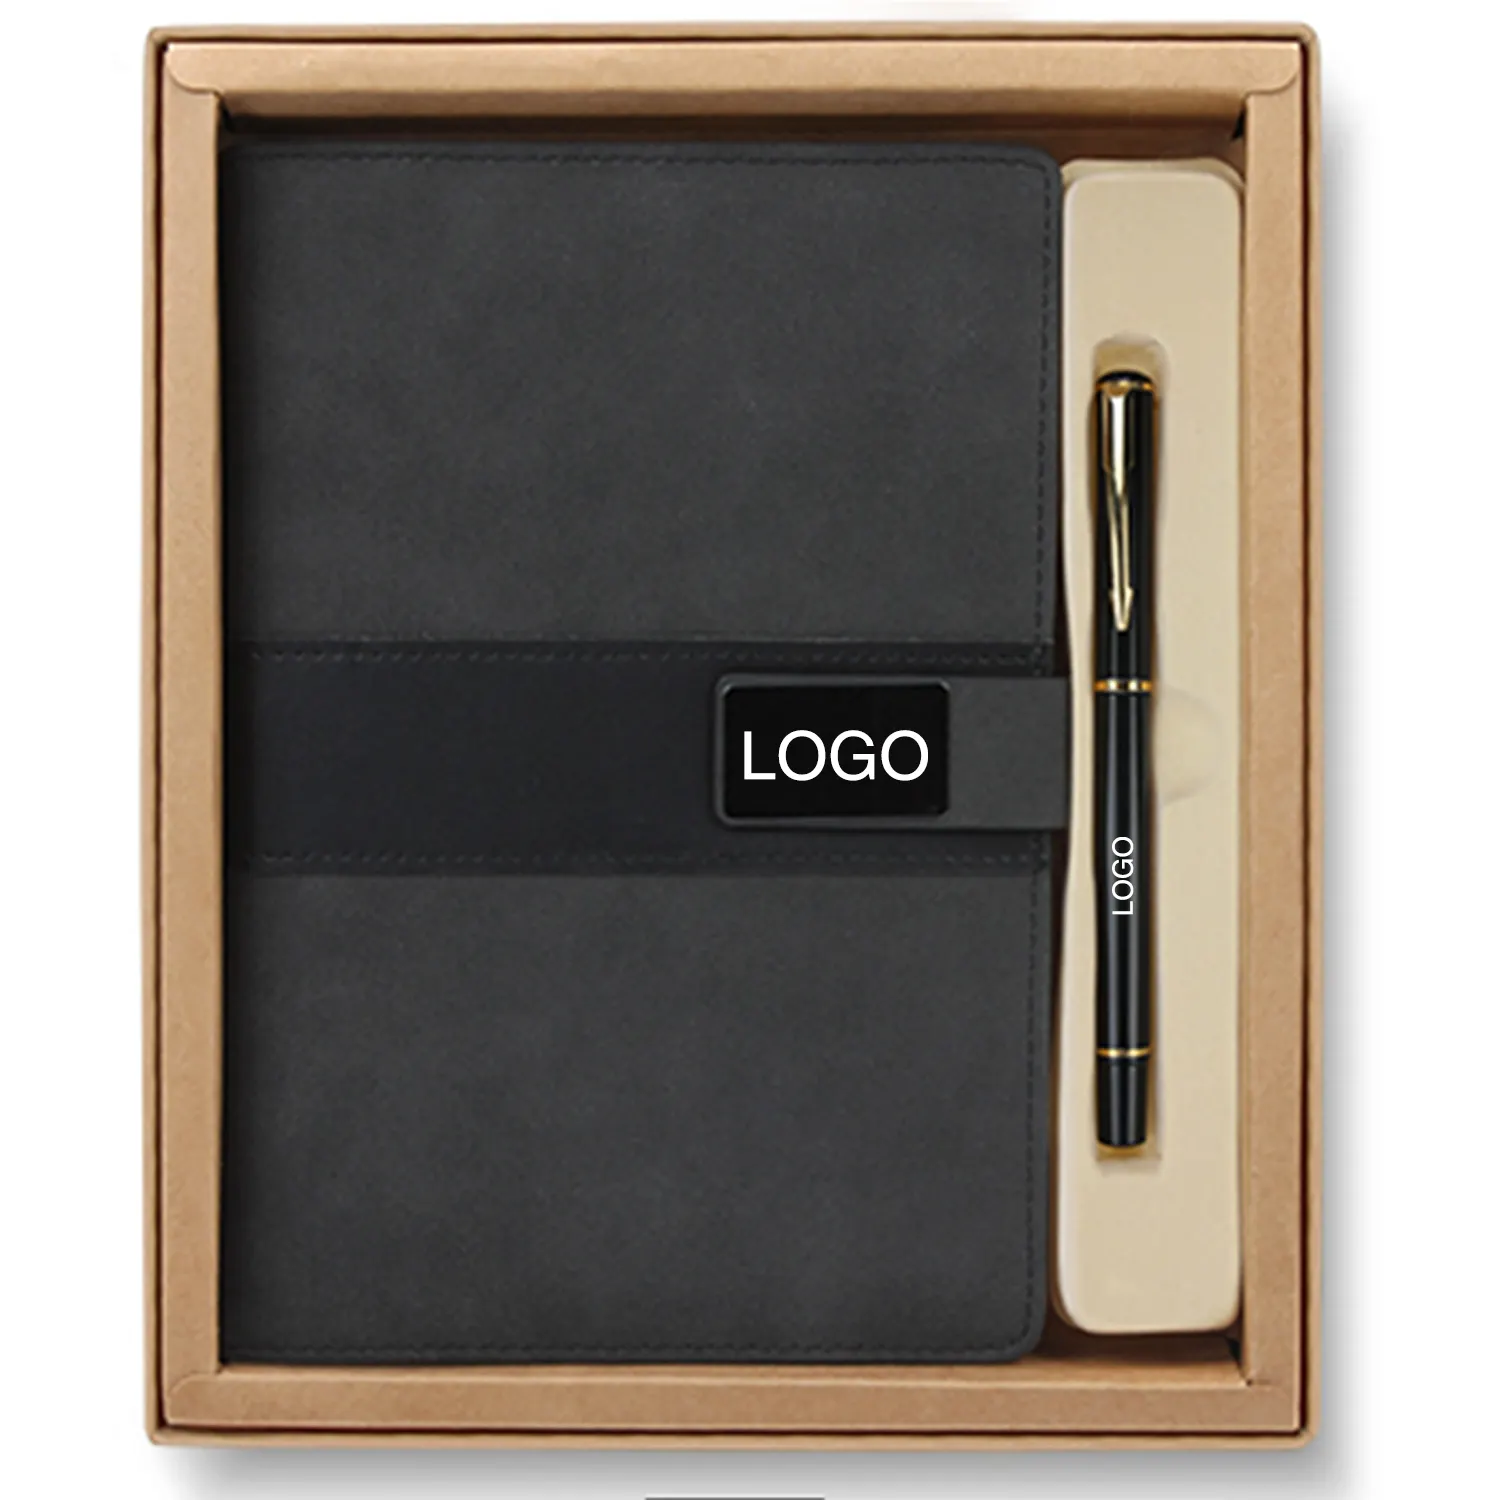 Высококачественный рекламный бизнес-Корпоративный подарочный набор для шариковых ручек и блокнота с логотипом